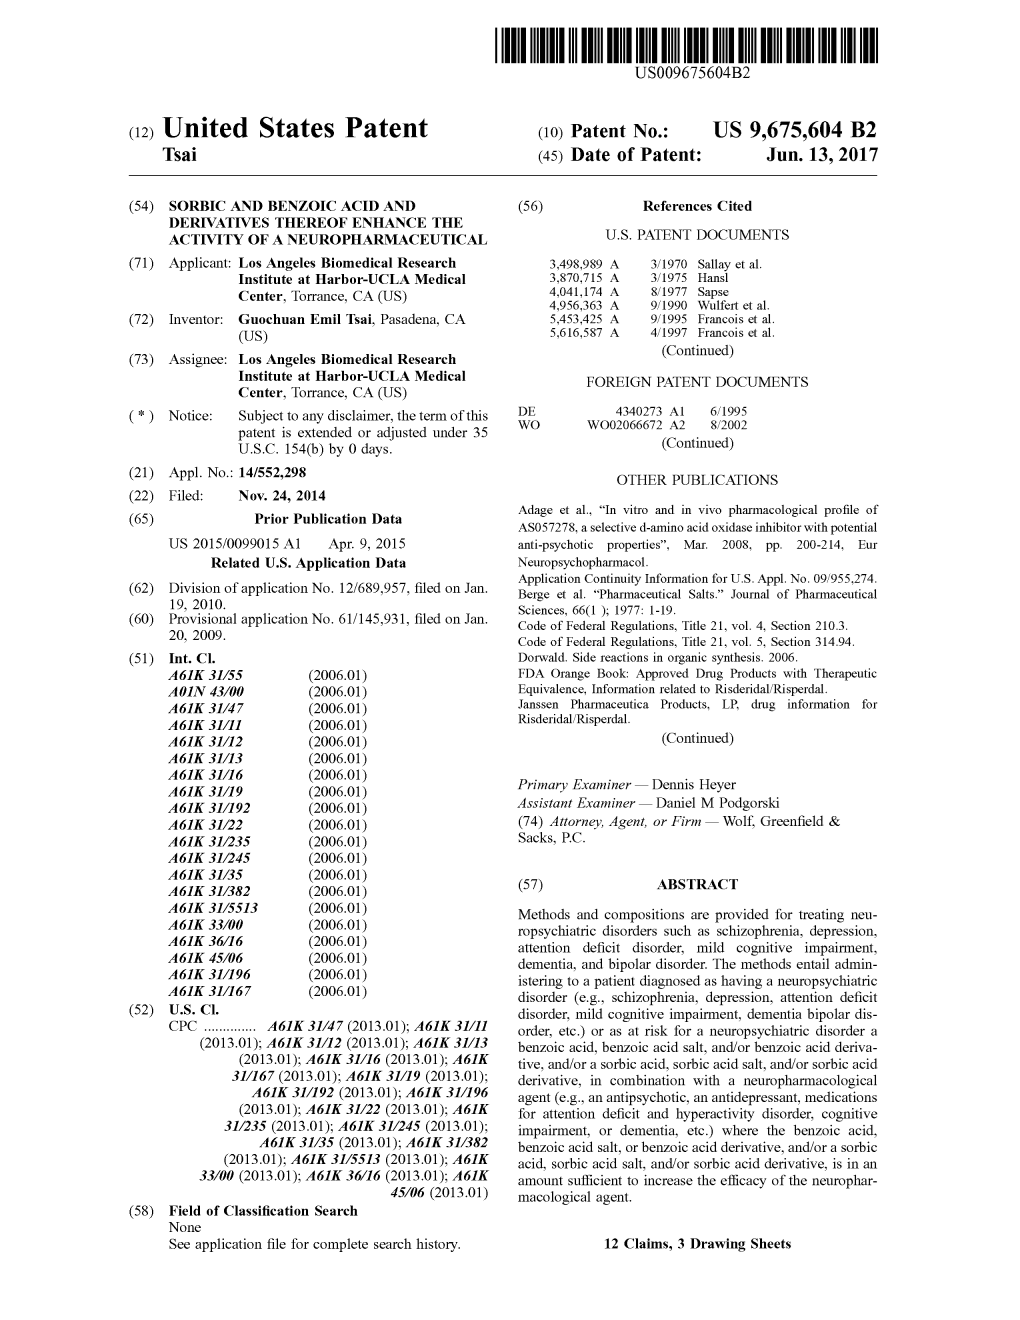 (12) United States Patent (10) Patent No.: US 9,675,604 B2 Tsai (45) Date of Patent: Jun